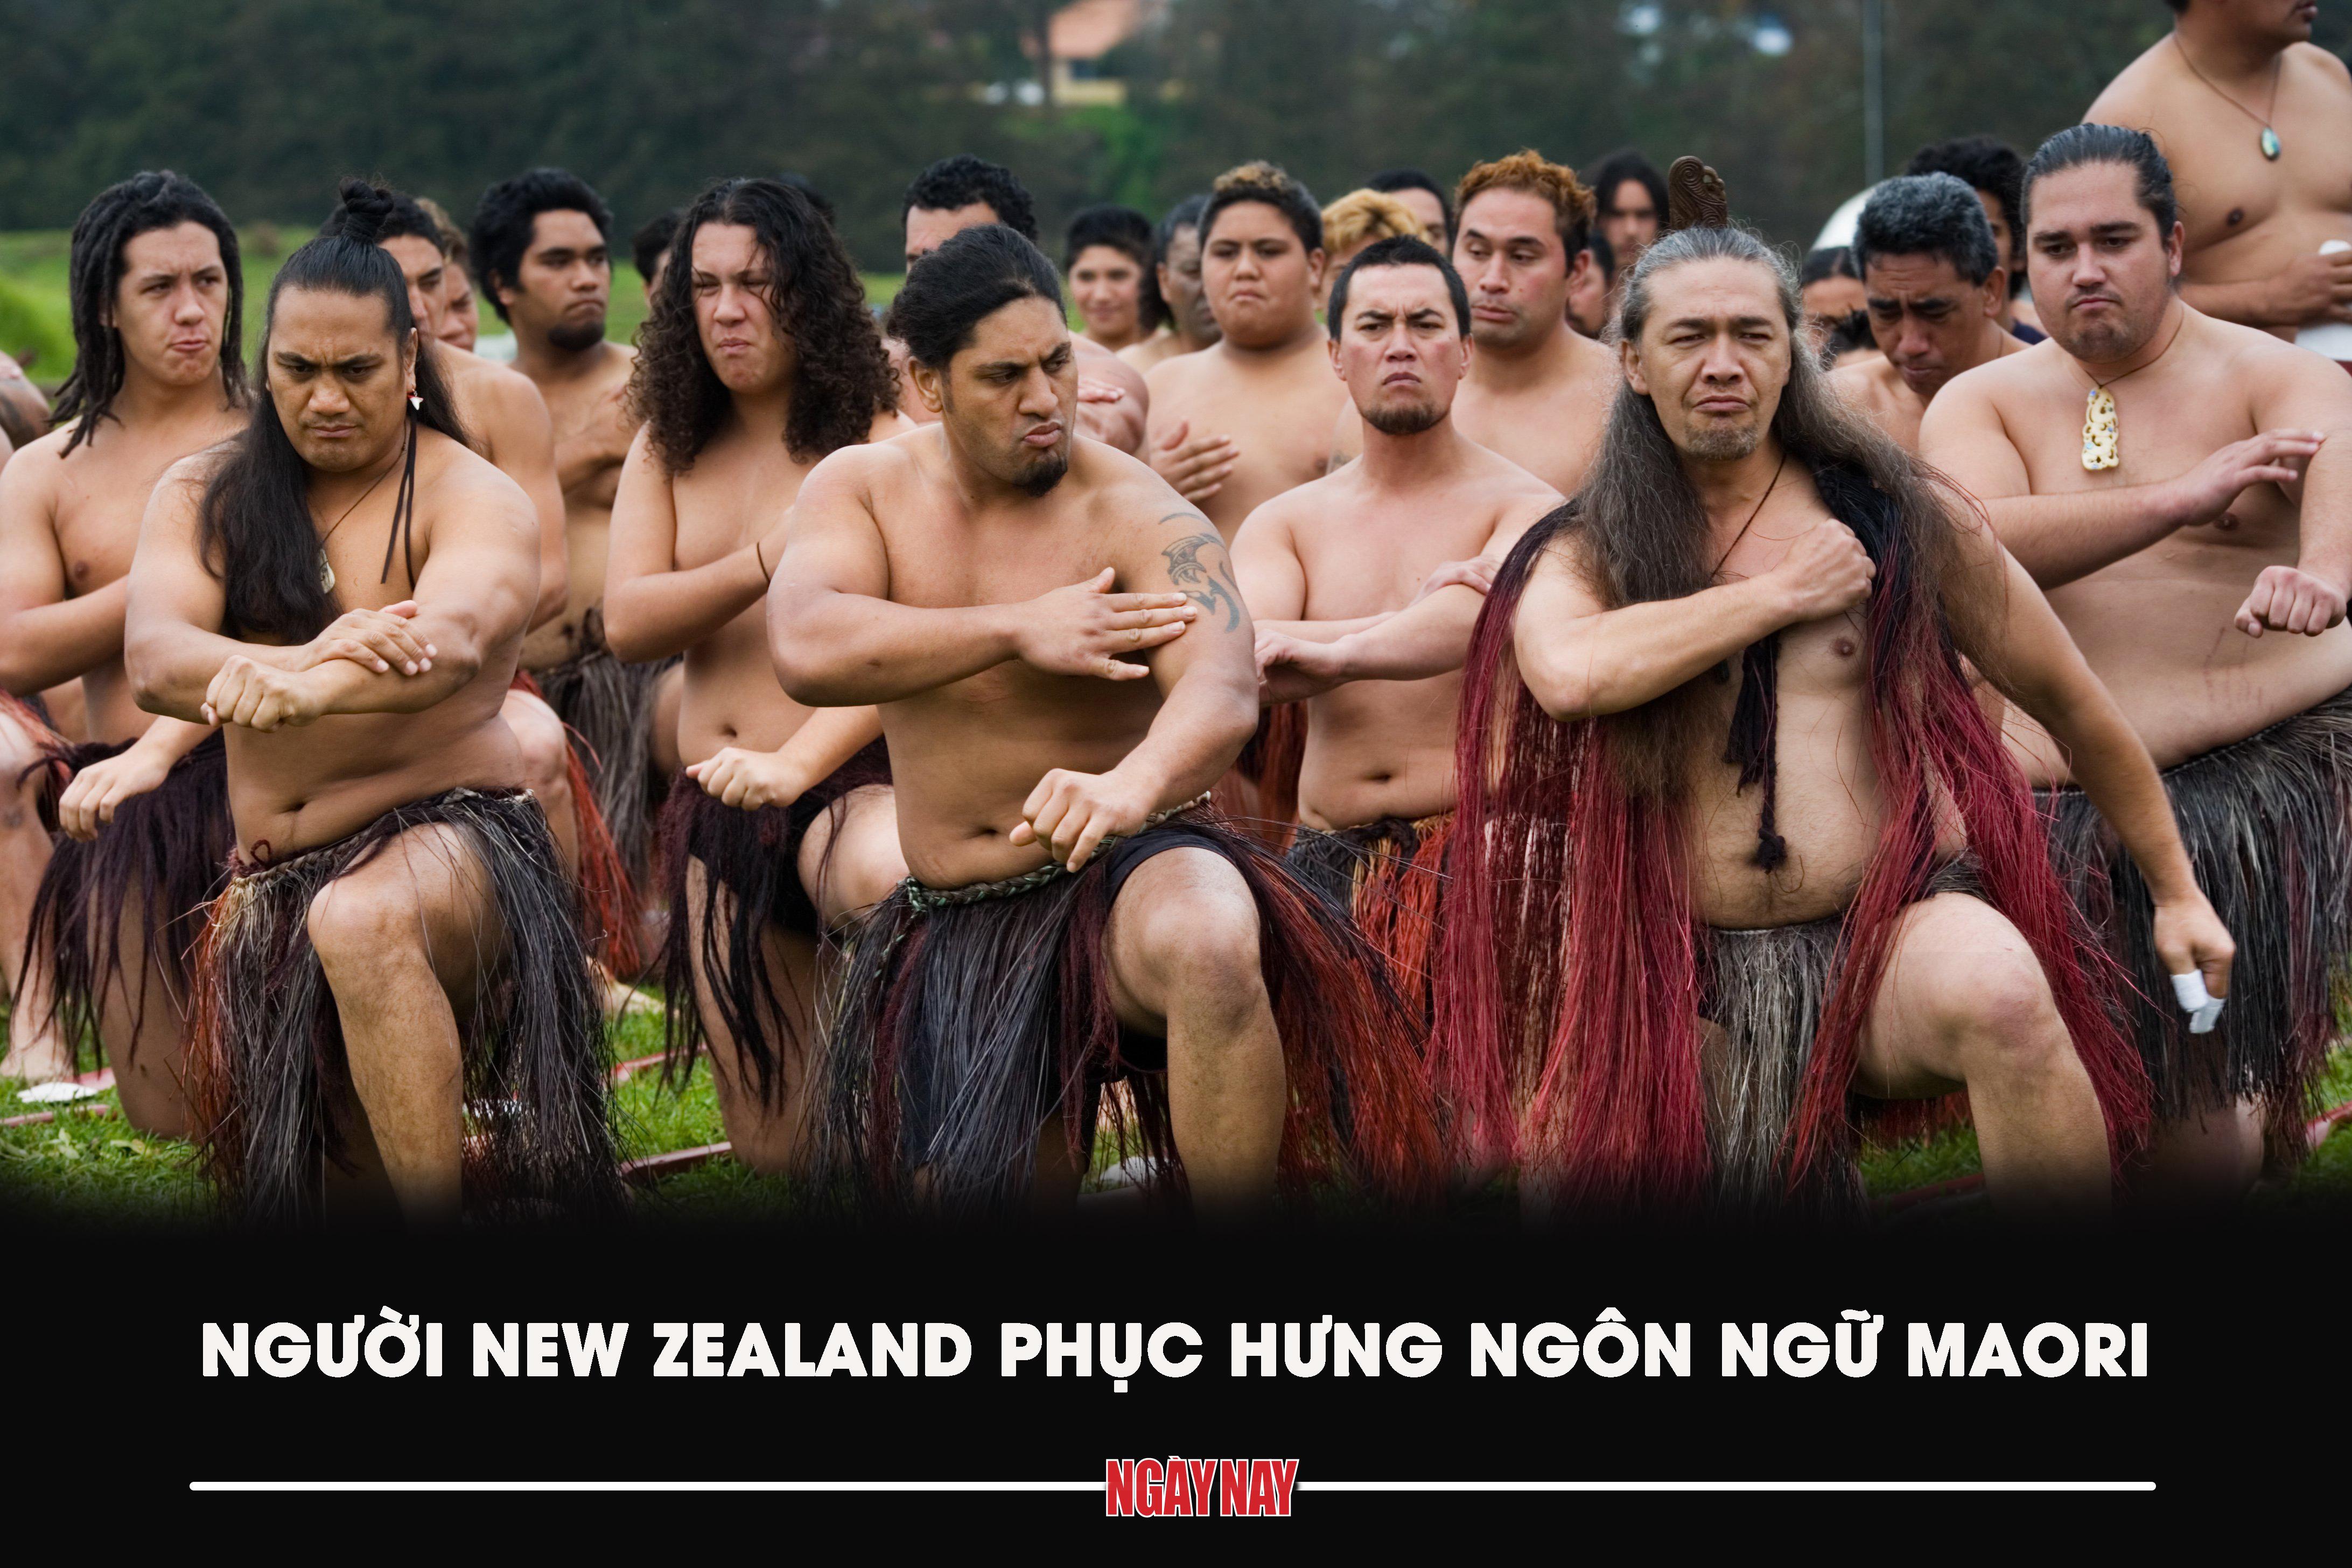 Người New Zealand phục hưng ngôn ngữ Maori